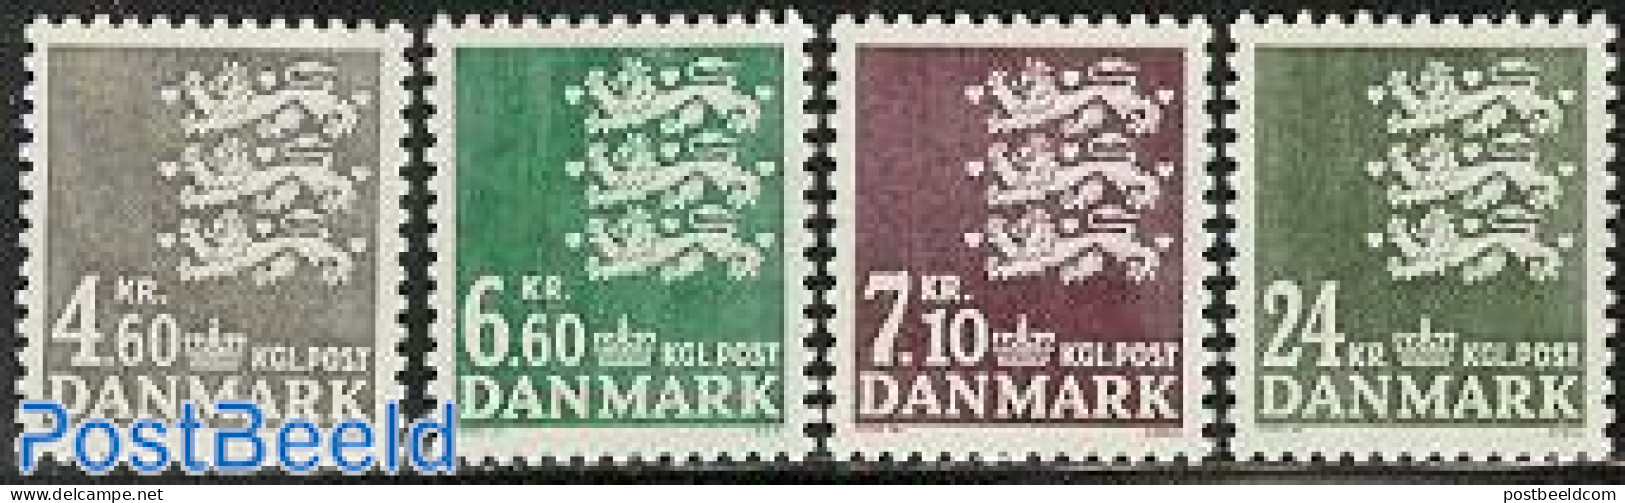 Denmark 1988 Definitives 4v, Mint NH - Nuevos